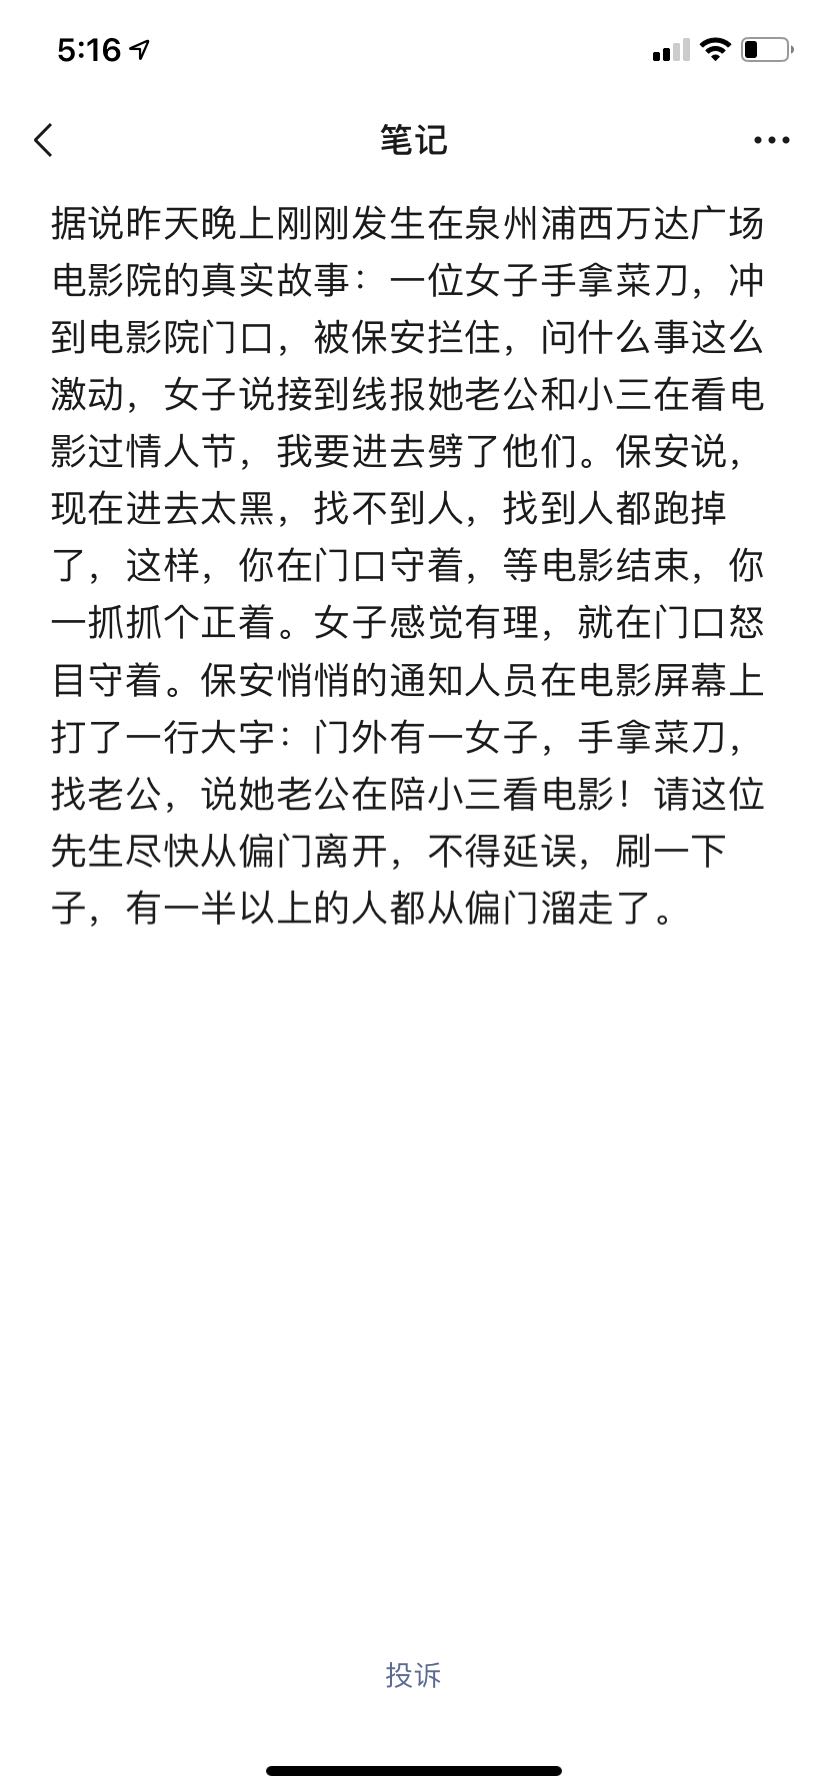 WeChat Image_20210216222216.jpg